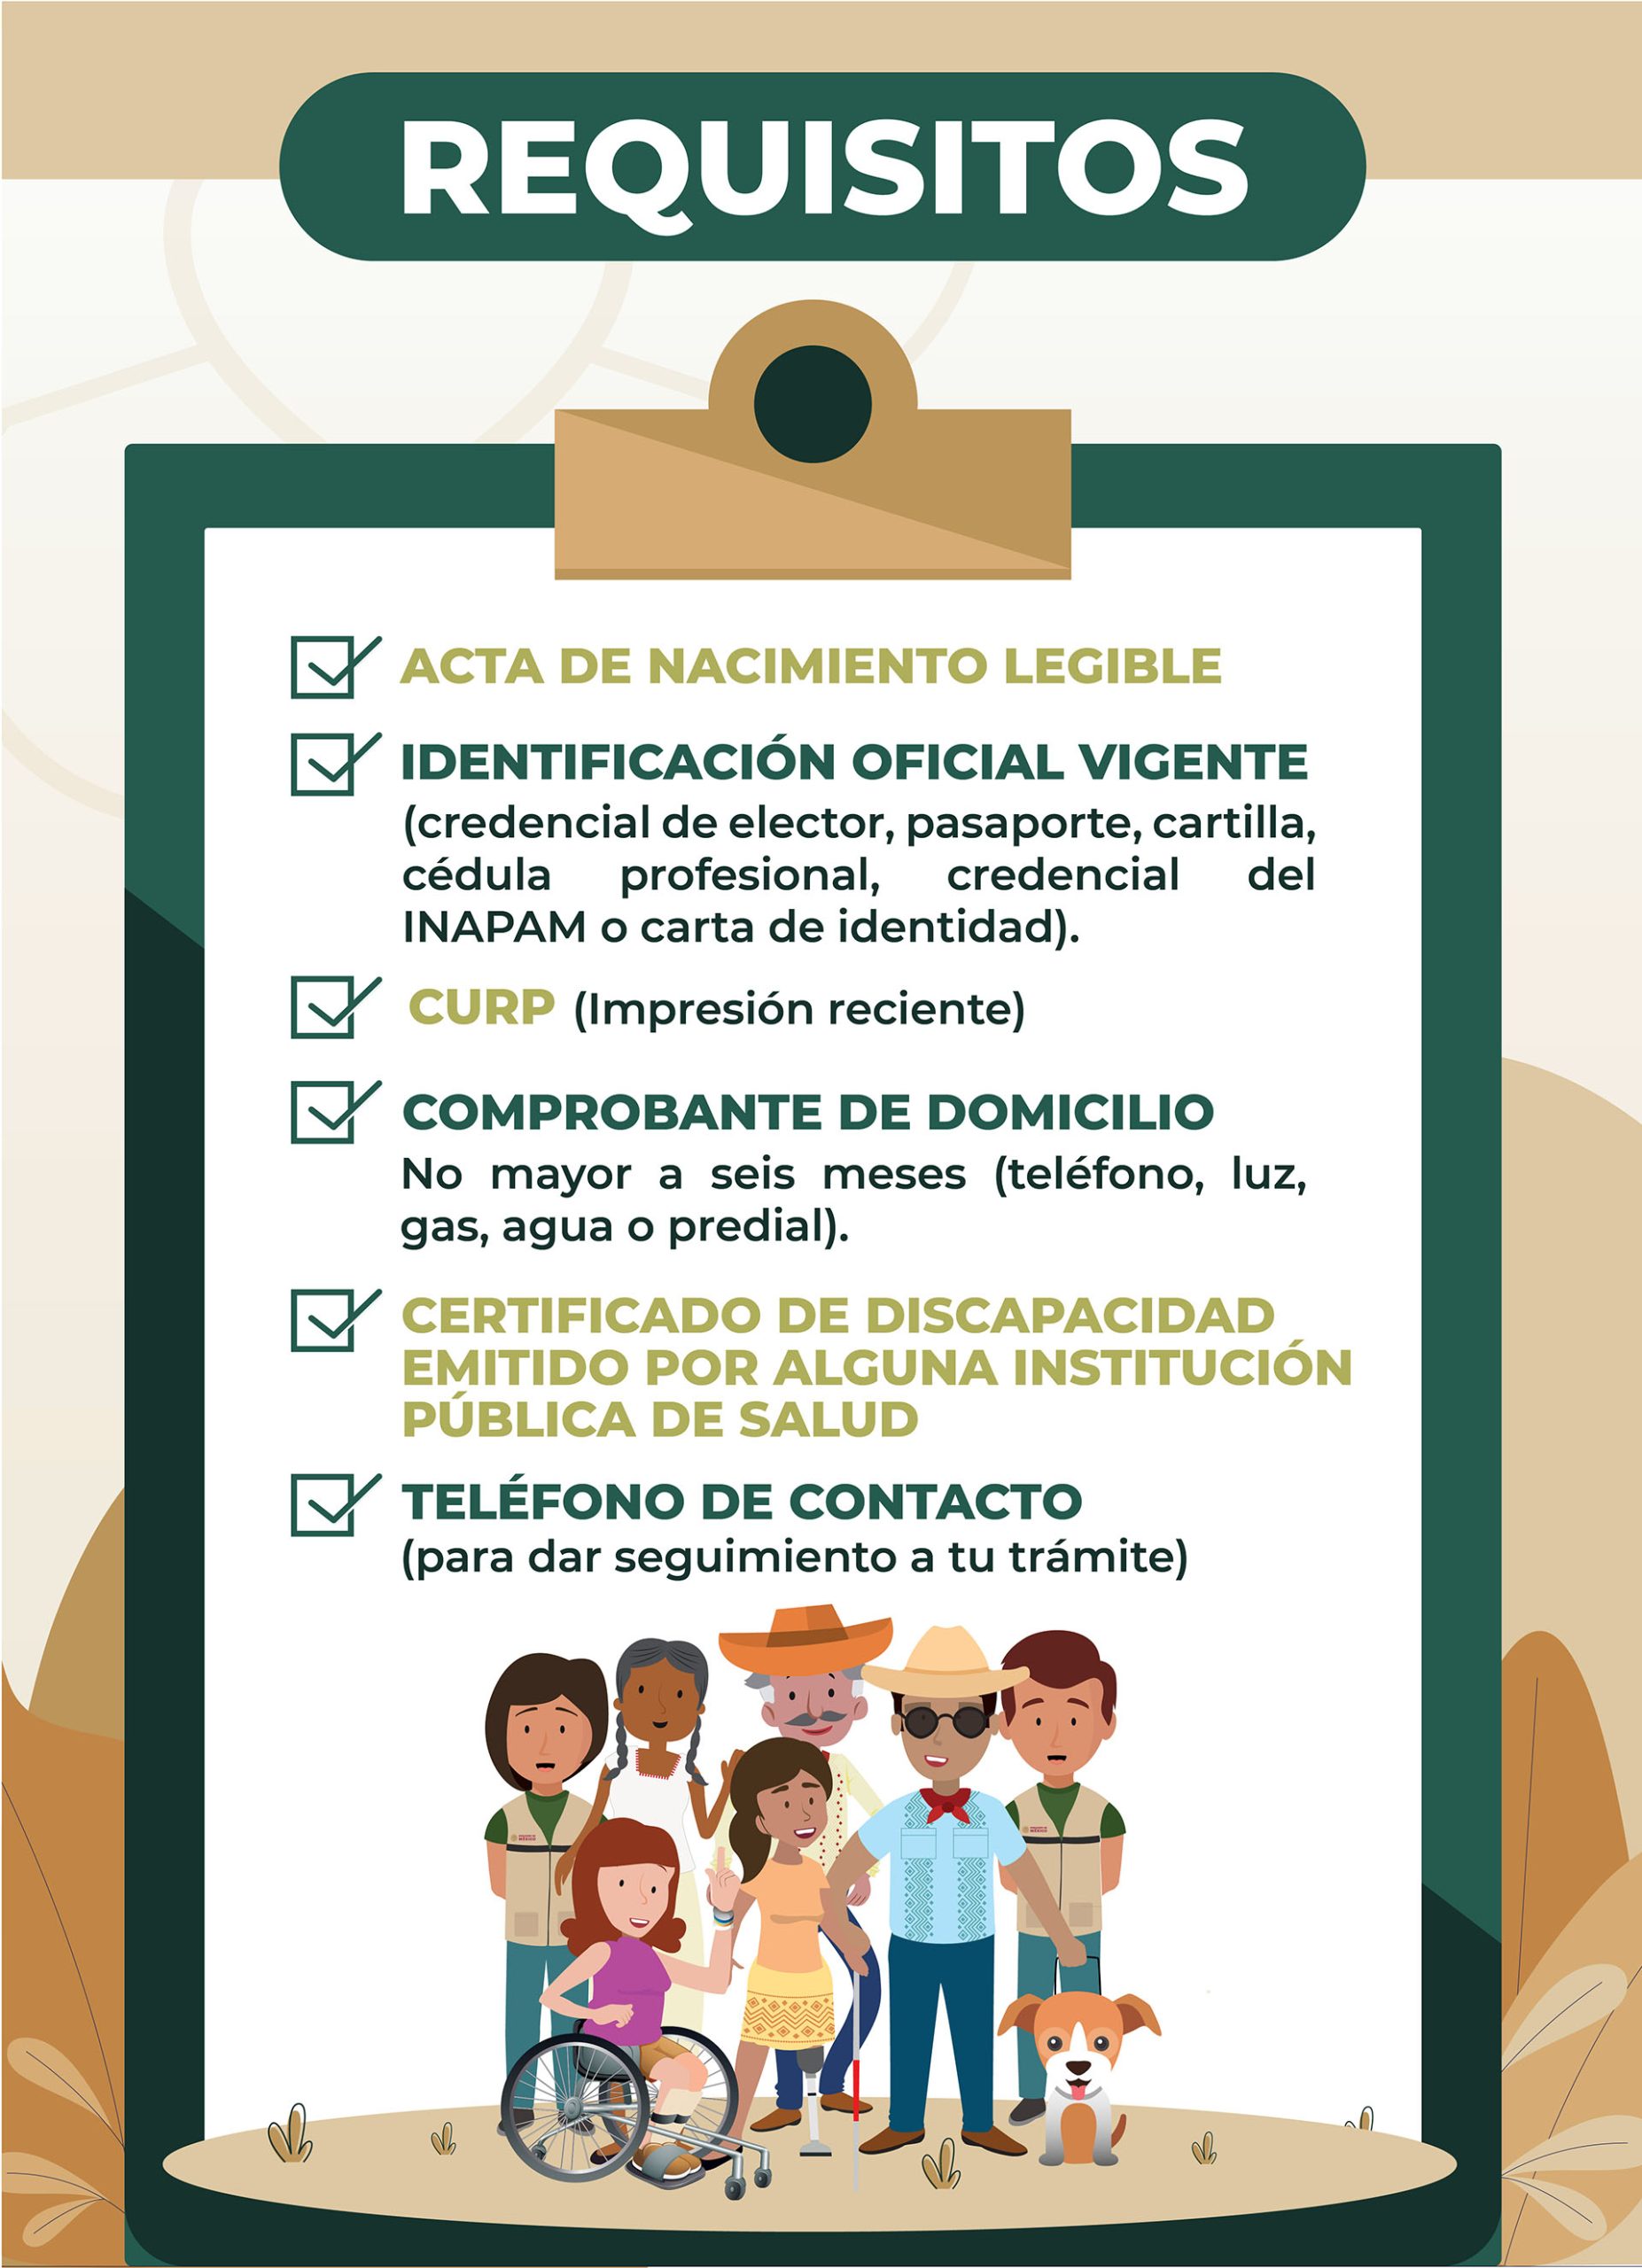 Descubre cómo y dónde puedes obtener tu certificado de discapacidad en el Estado de México.